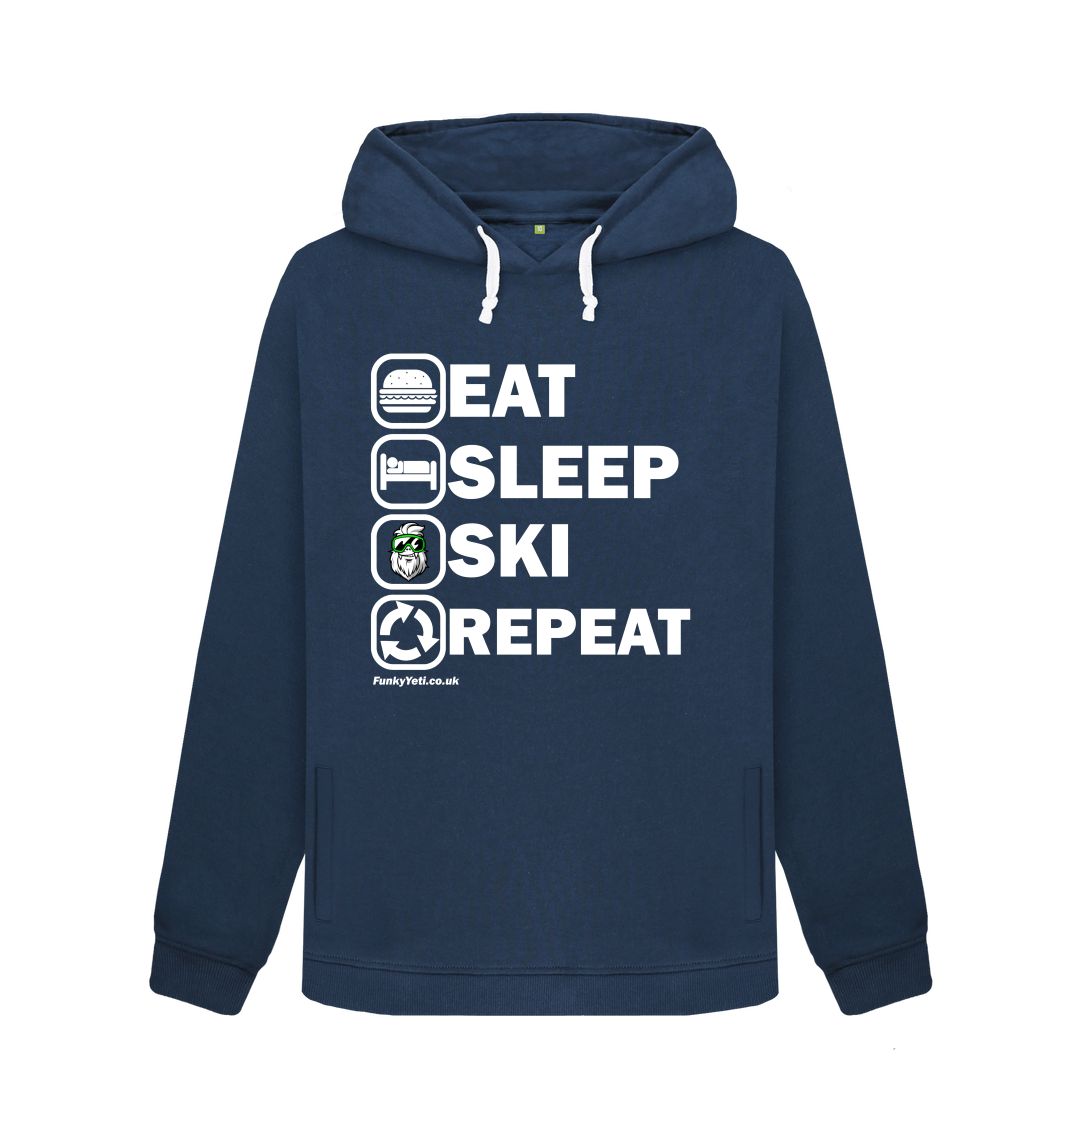 Navy Blue Funky Yeti Women's Pullover Hoodie - Eat Sleep Ski Repeat